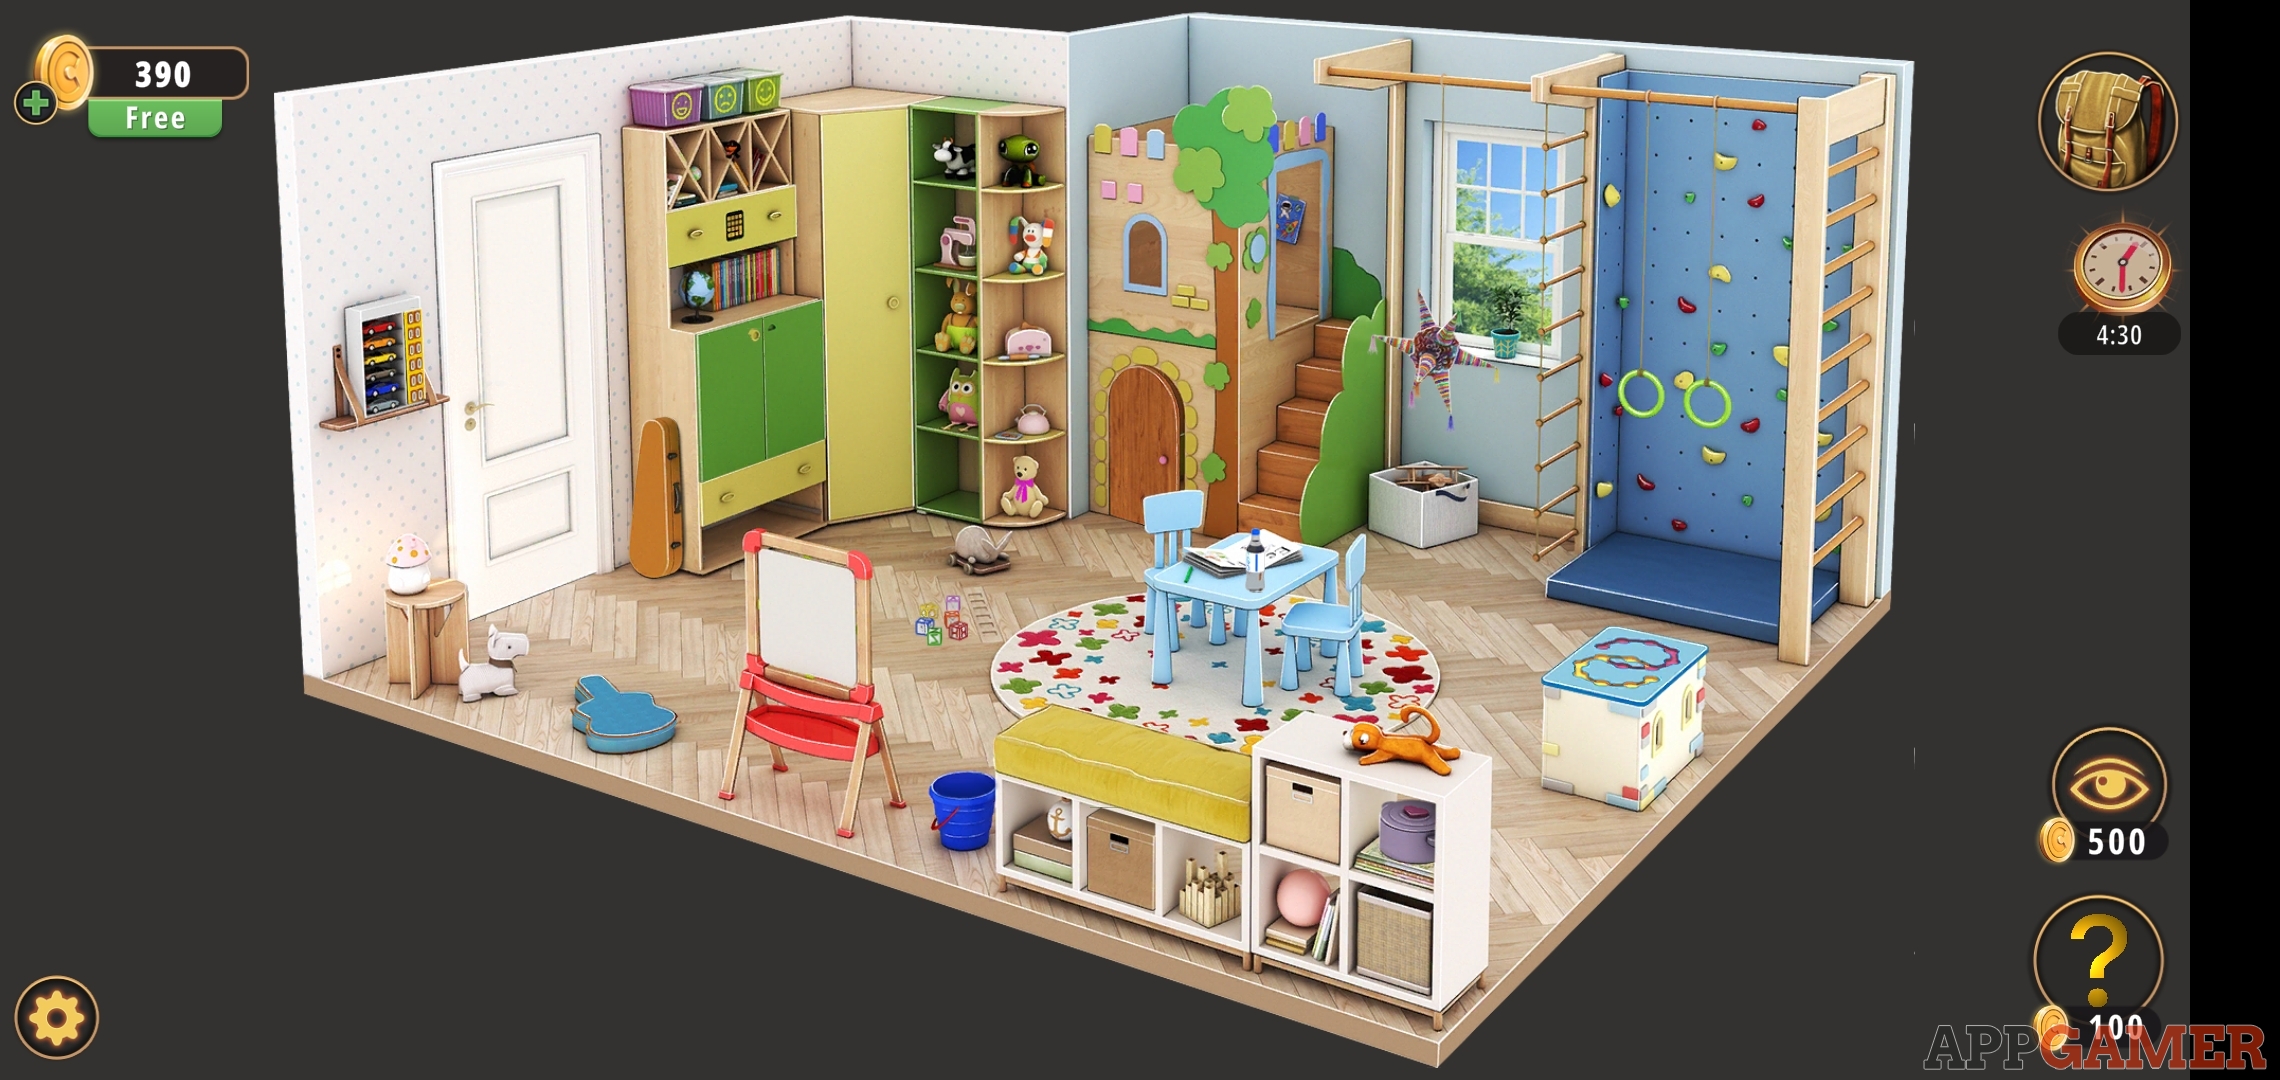 kids-playroom-walkthrough-rooms-exits-rooms-exits-escape-room